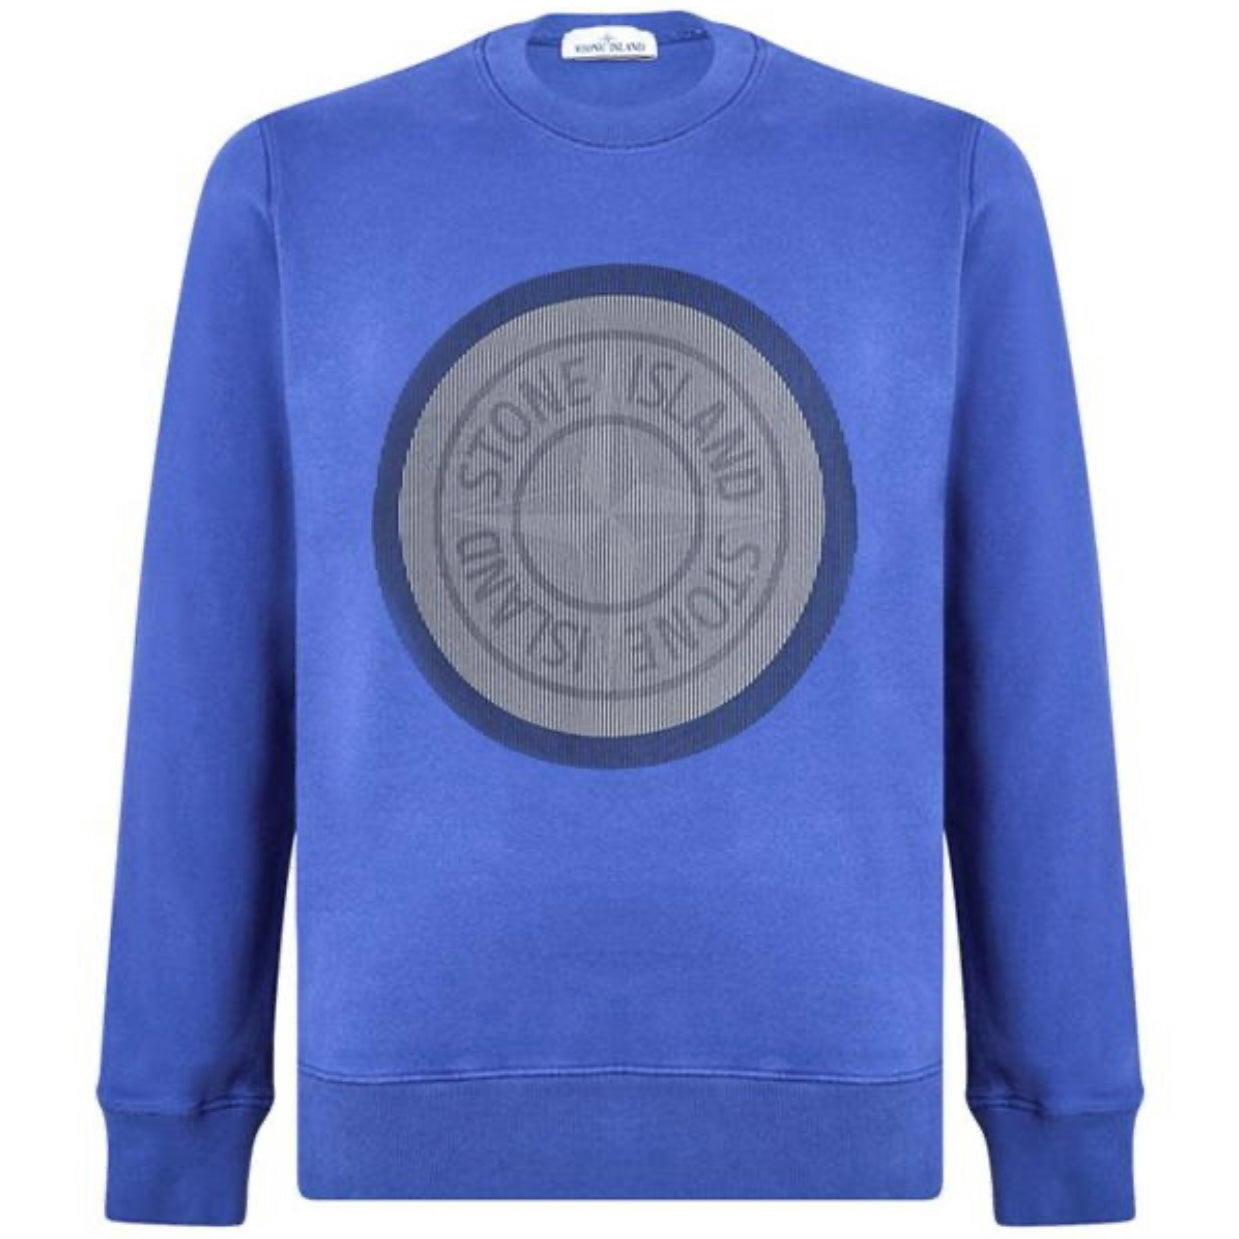 Stone Island Blue Large Logo Sweatshirt - DANYOUNGUK